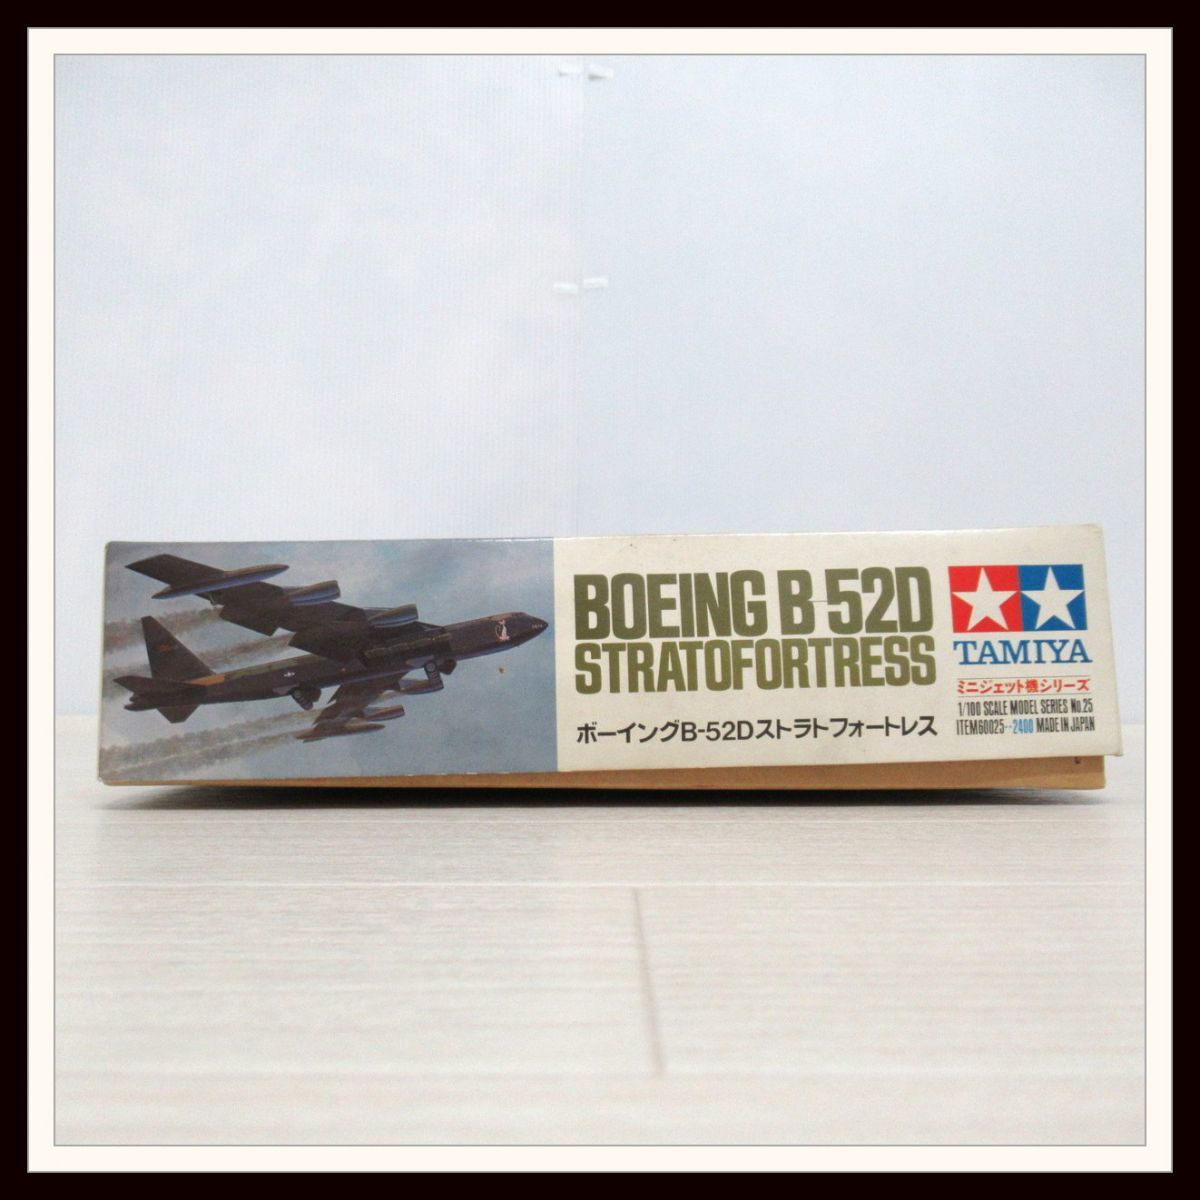 雅虎代拍 -- タミヤ 1/100 ボーイングB-52Dストラトフォートレス ミニジェット機シリーズ No.25 STRATOFORTRESS  アメリカ空軍 戦略爆撃機【B1【S3